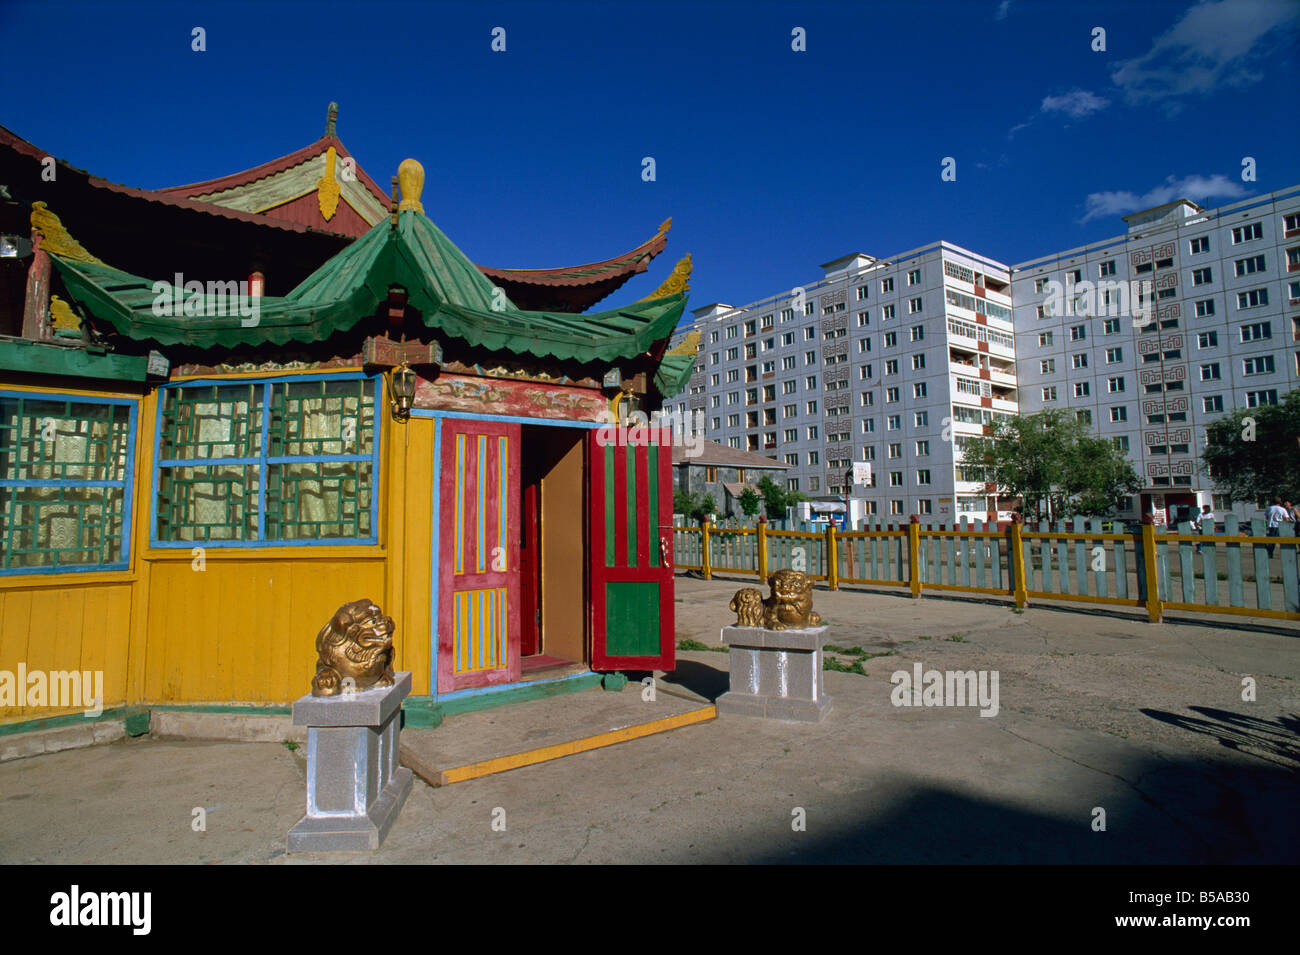 La pagode de style restaurant, centre-ville, Ulan Bator, Tov, la Mongolie, l'Asie centrale Banque D'Images